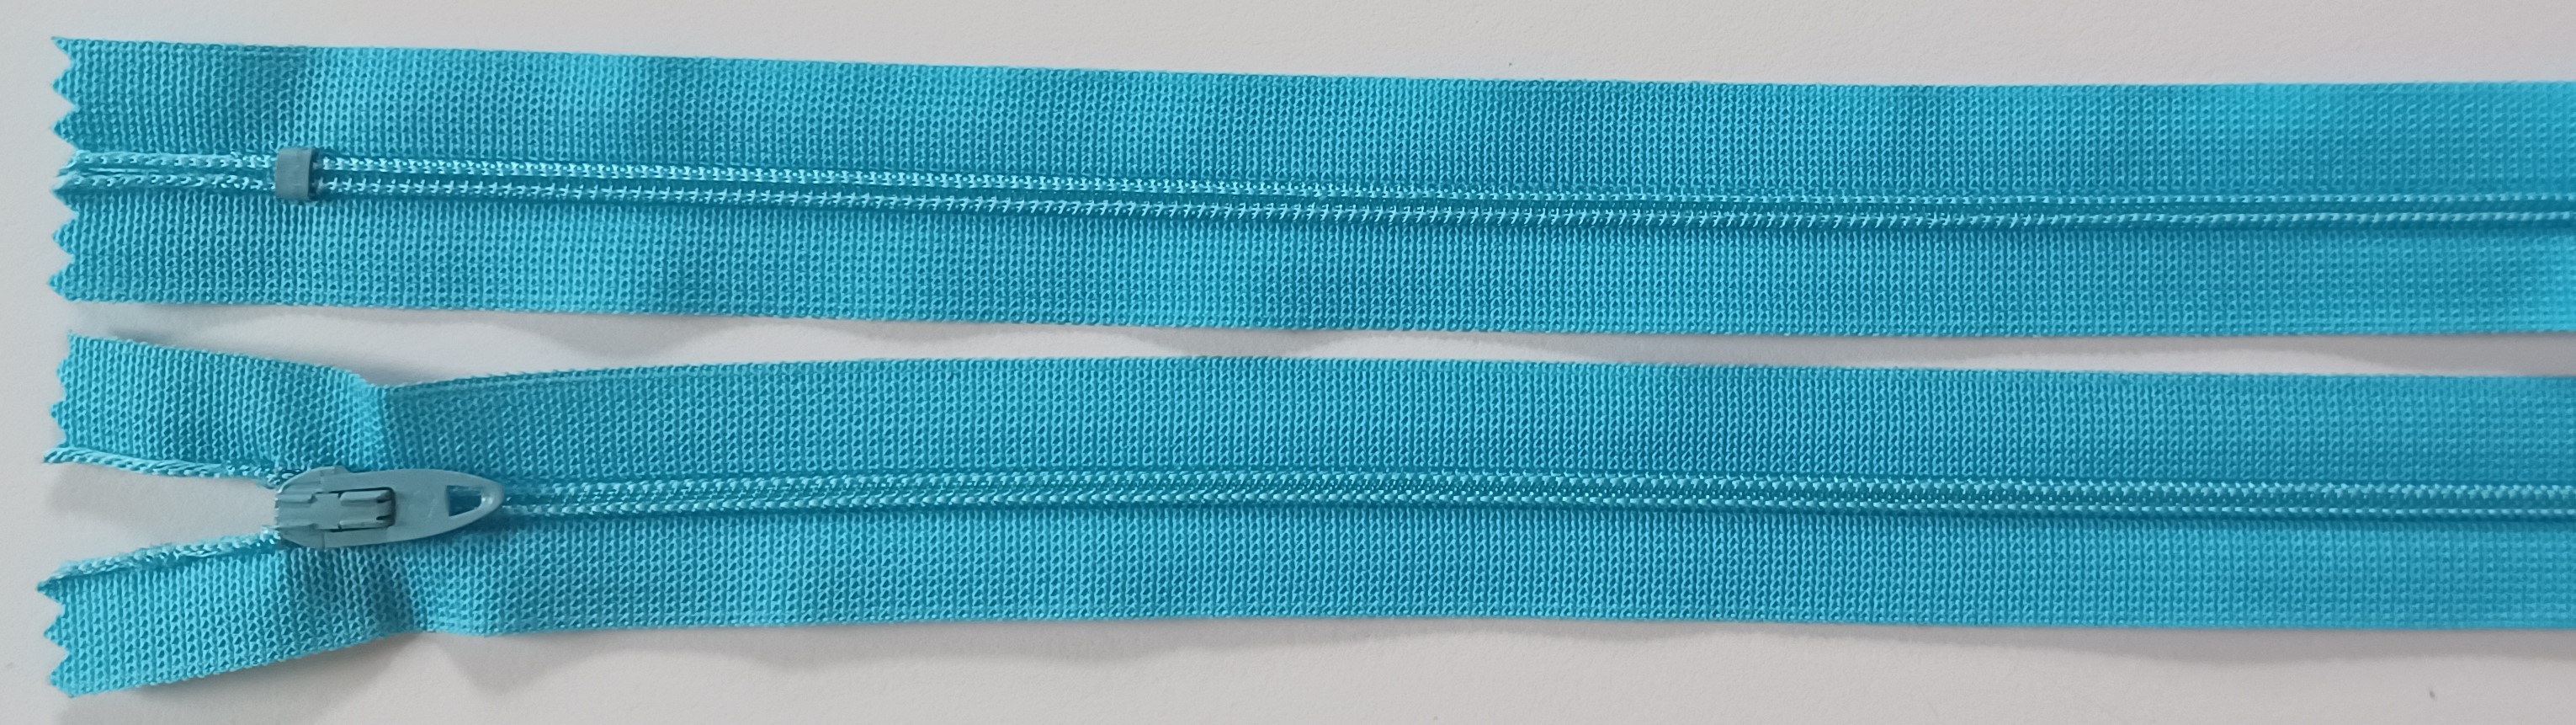 Coats & Clark 8.5" Persian Blue Nylon Coil Zipper